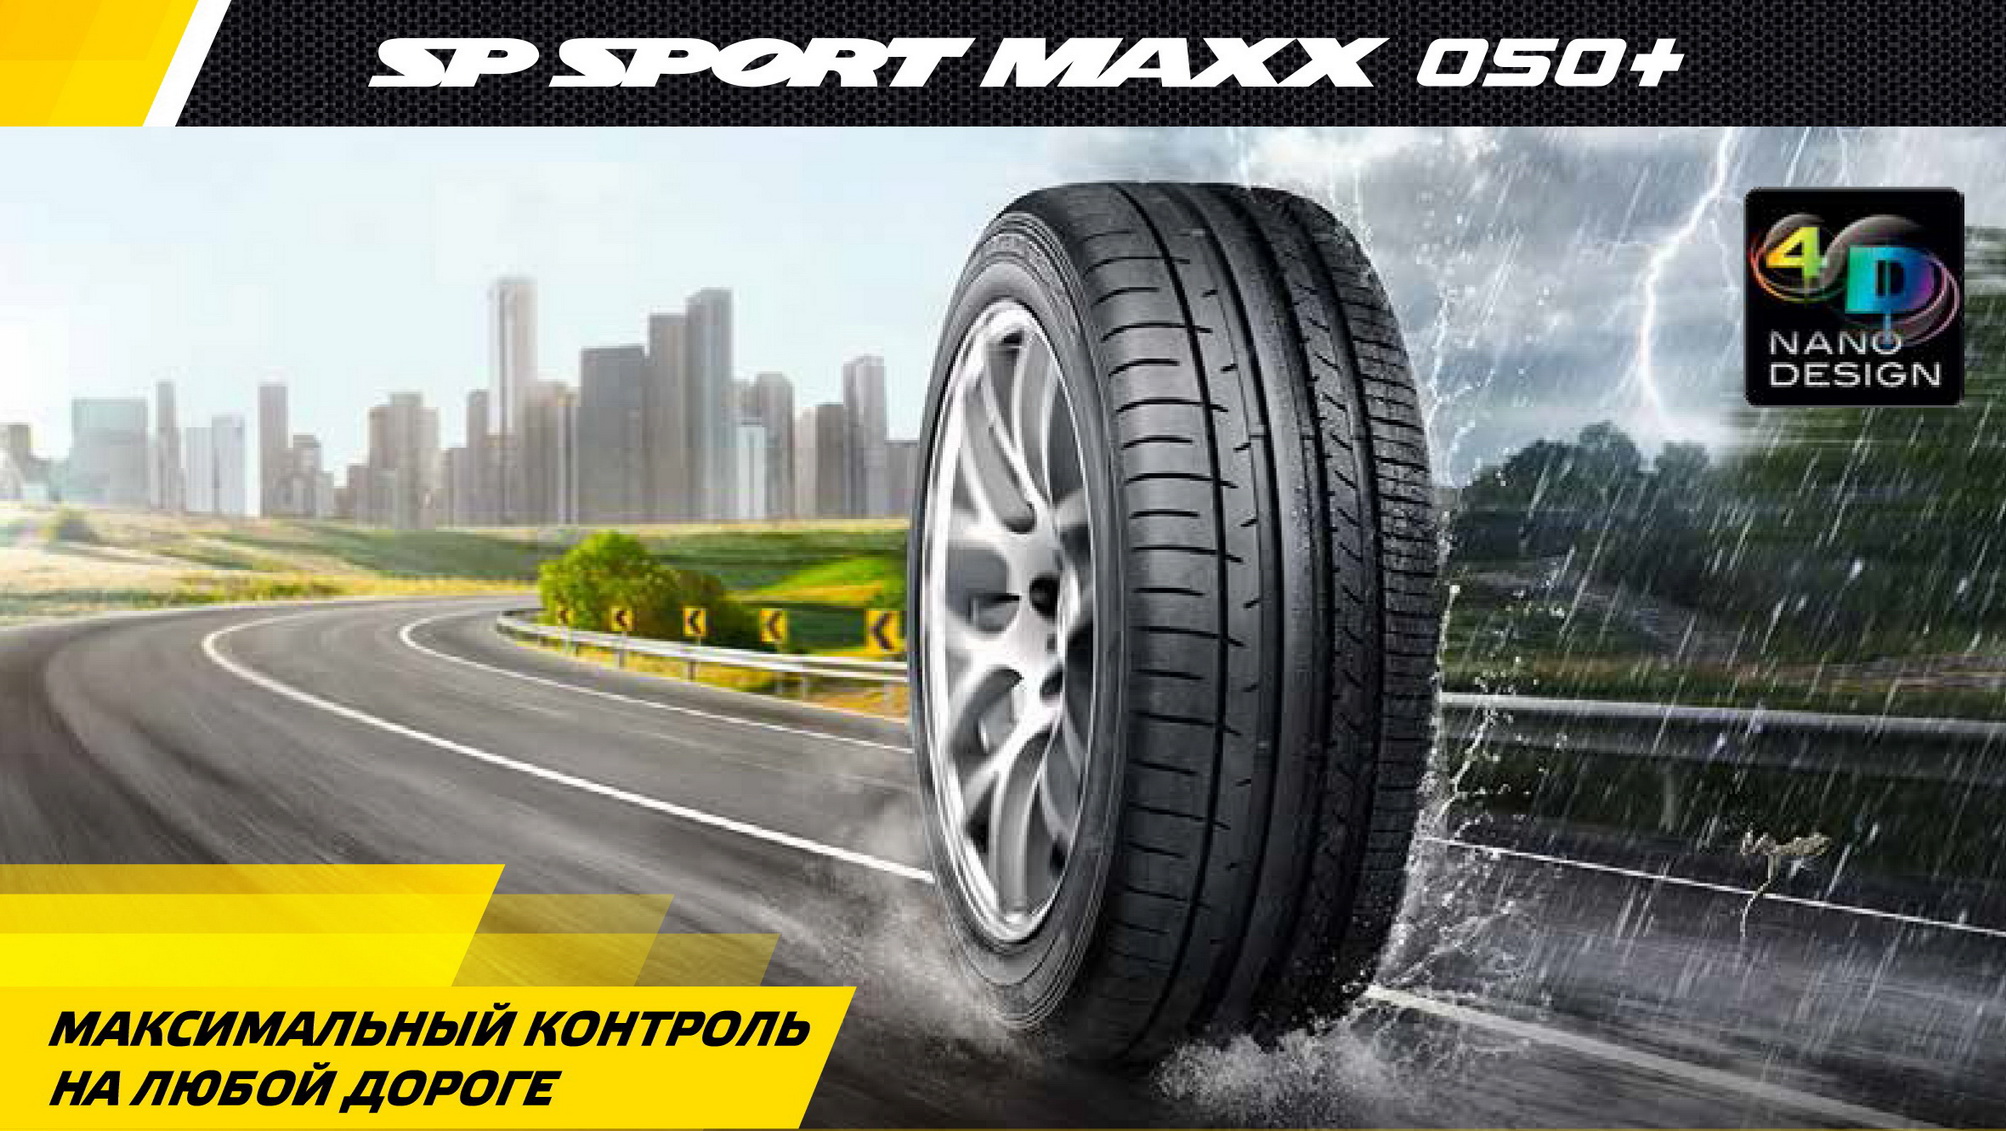 Dunlop SP Sport MAXX 050+